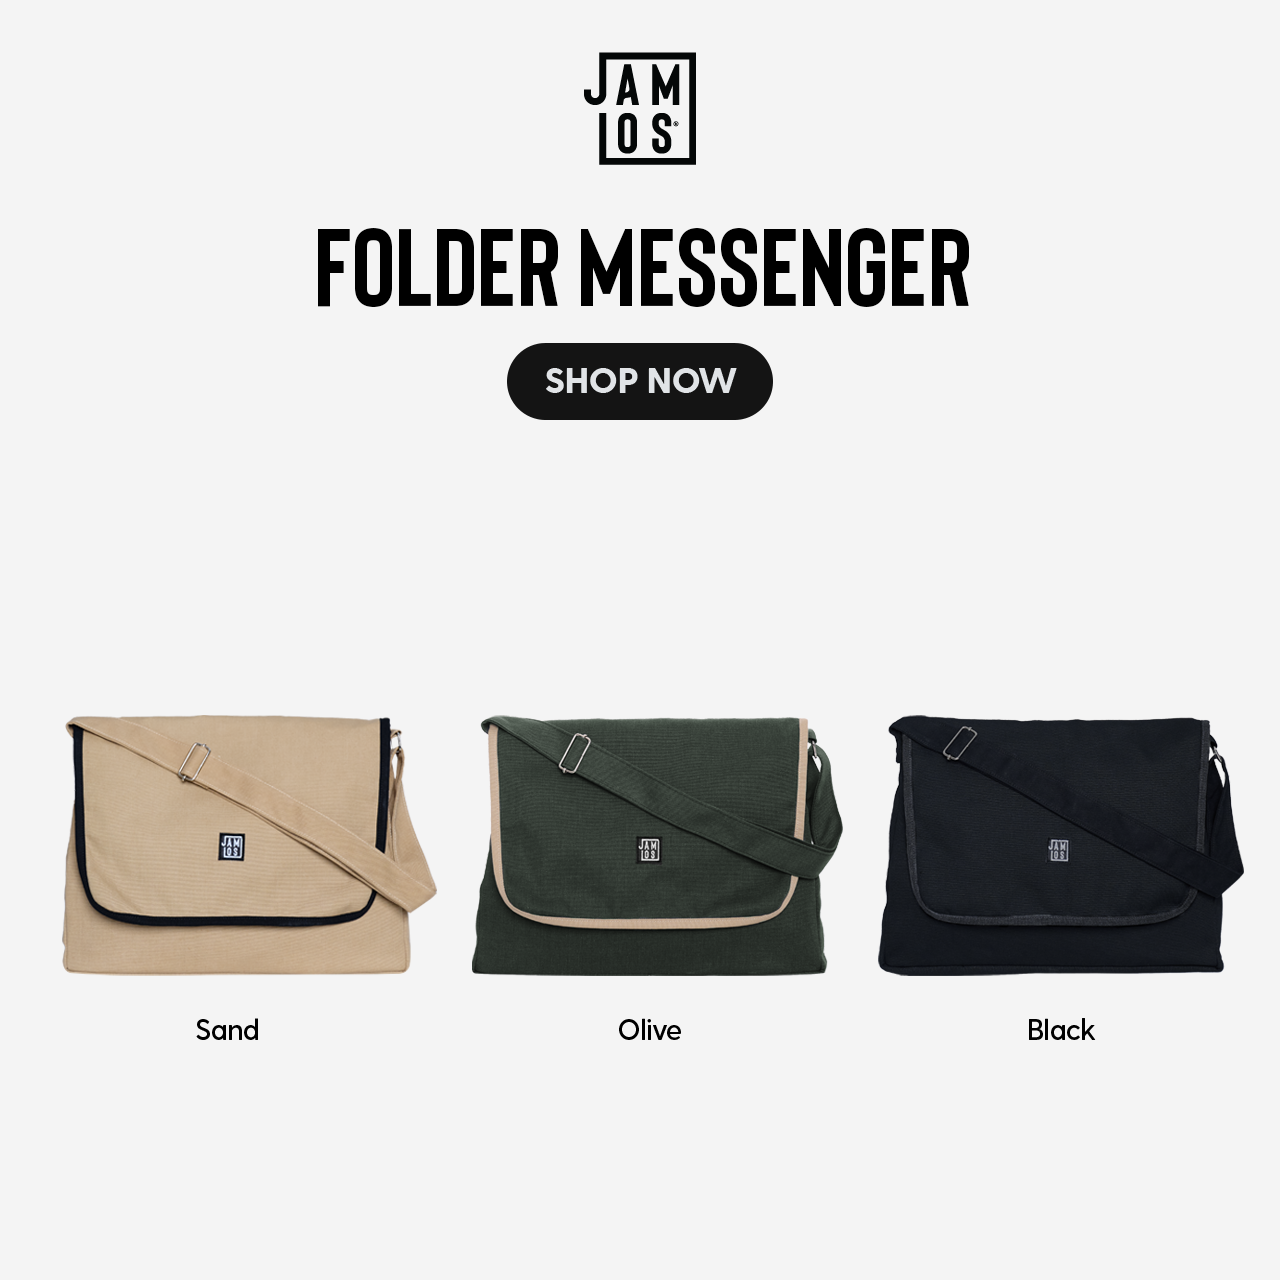 Folder Messenger